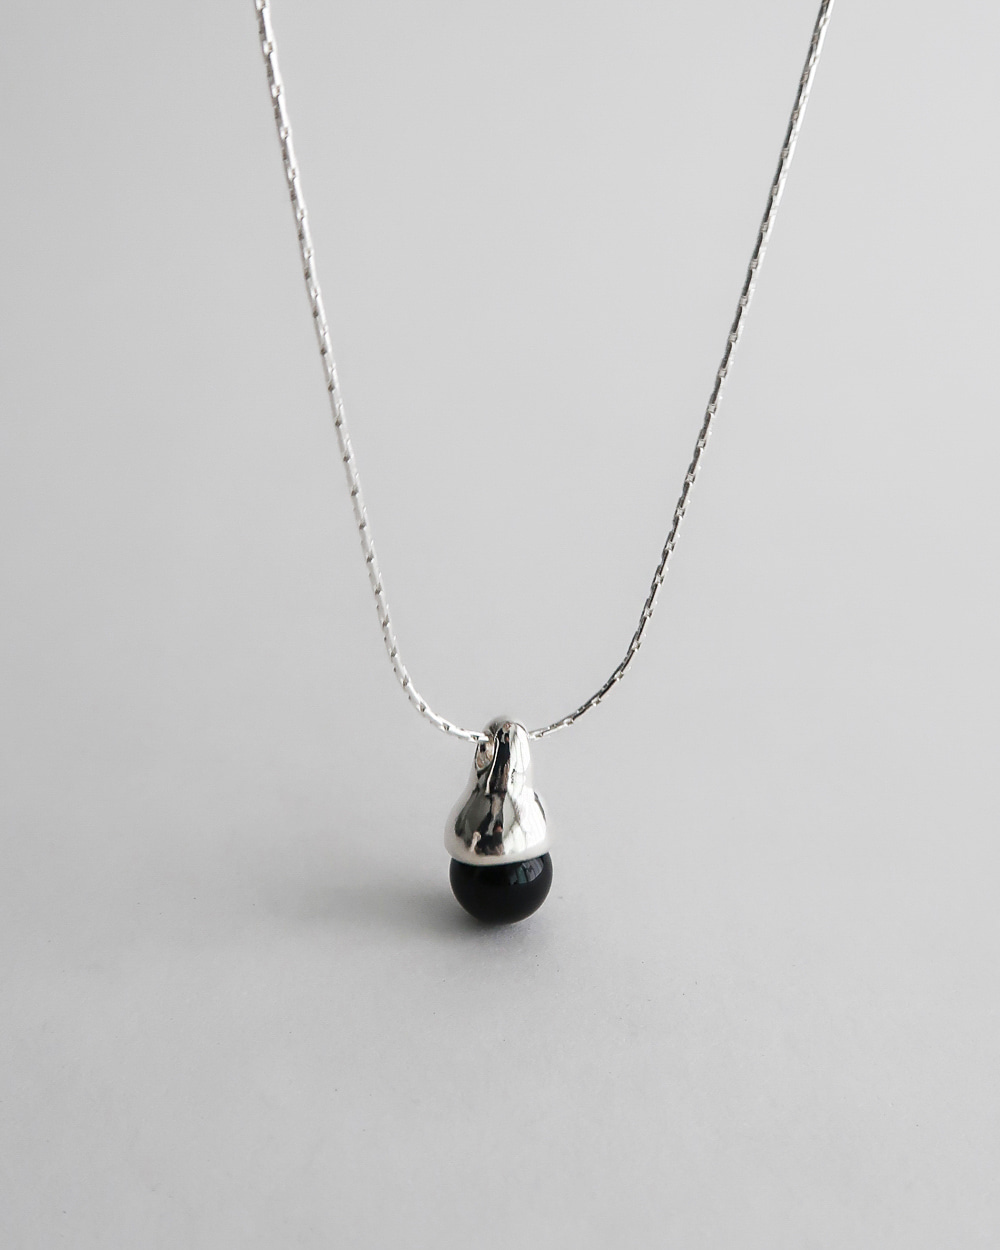 Drop line Necklace (black onyx)